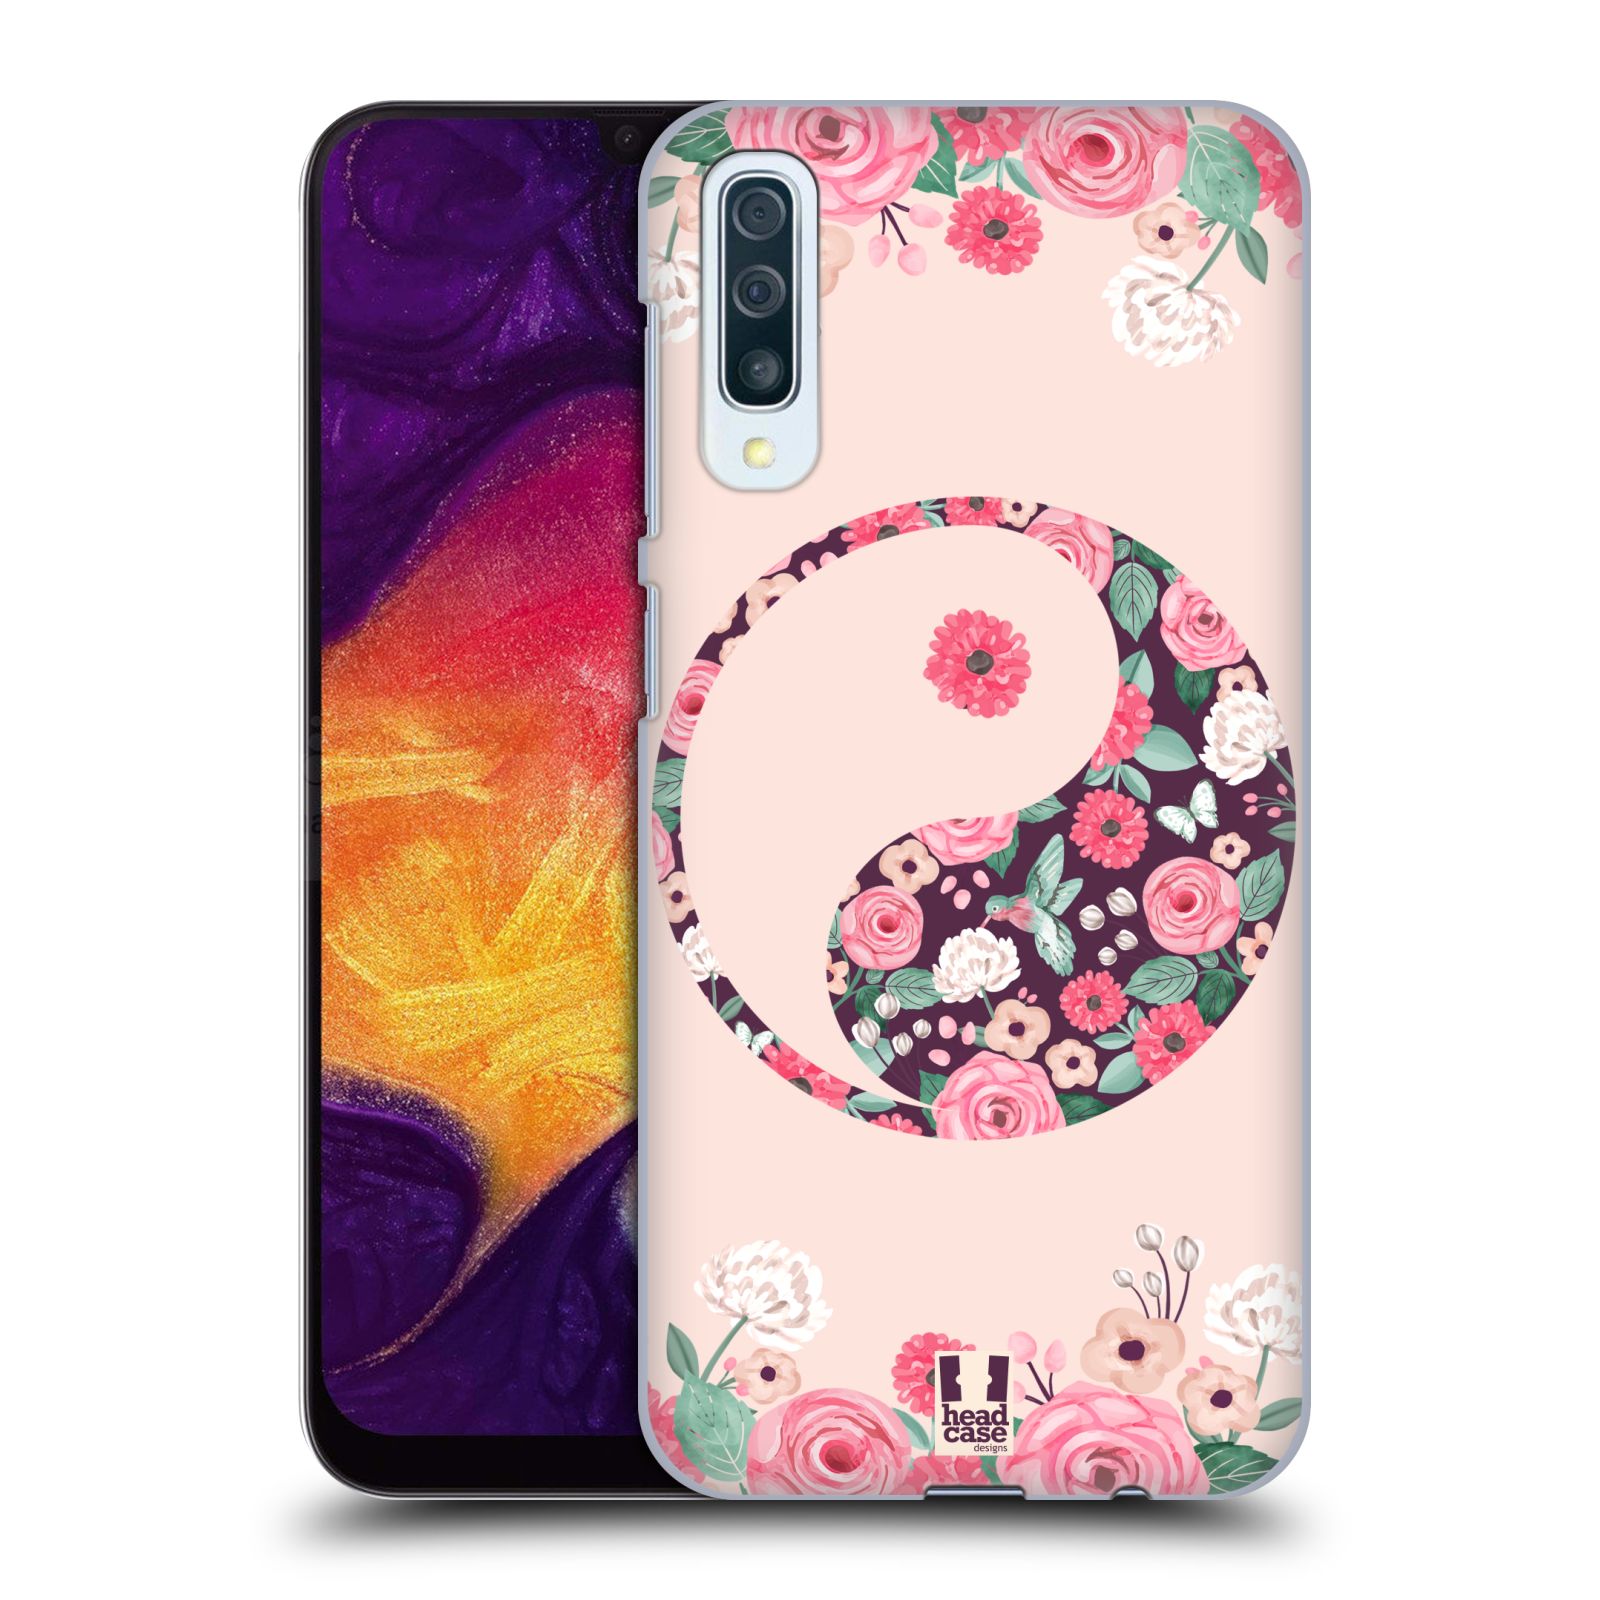 Plastové pouzdro na mobil Samsung Galaxy A50 / A30s - Head Case - Yin a Yang Floral (Plastový kryt, pouzdro, obal na mobilní telefon Samsung Galaxy A50 / A30s z roku 2019 s motivem Yin a Yang Floral)